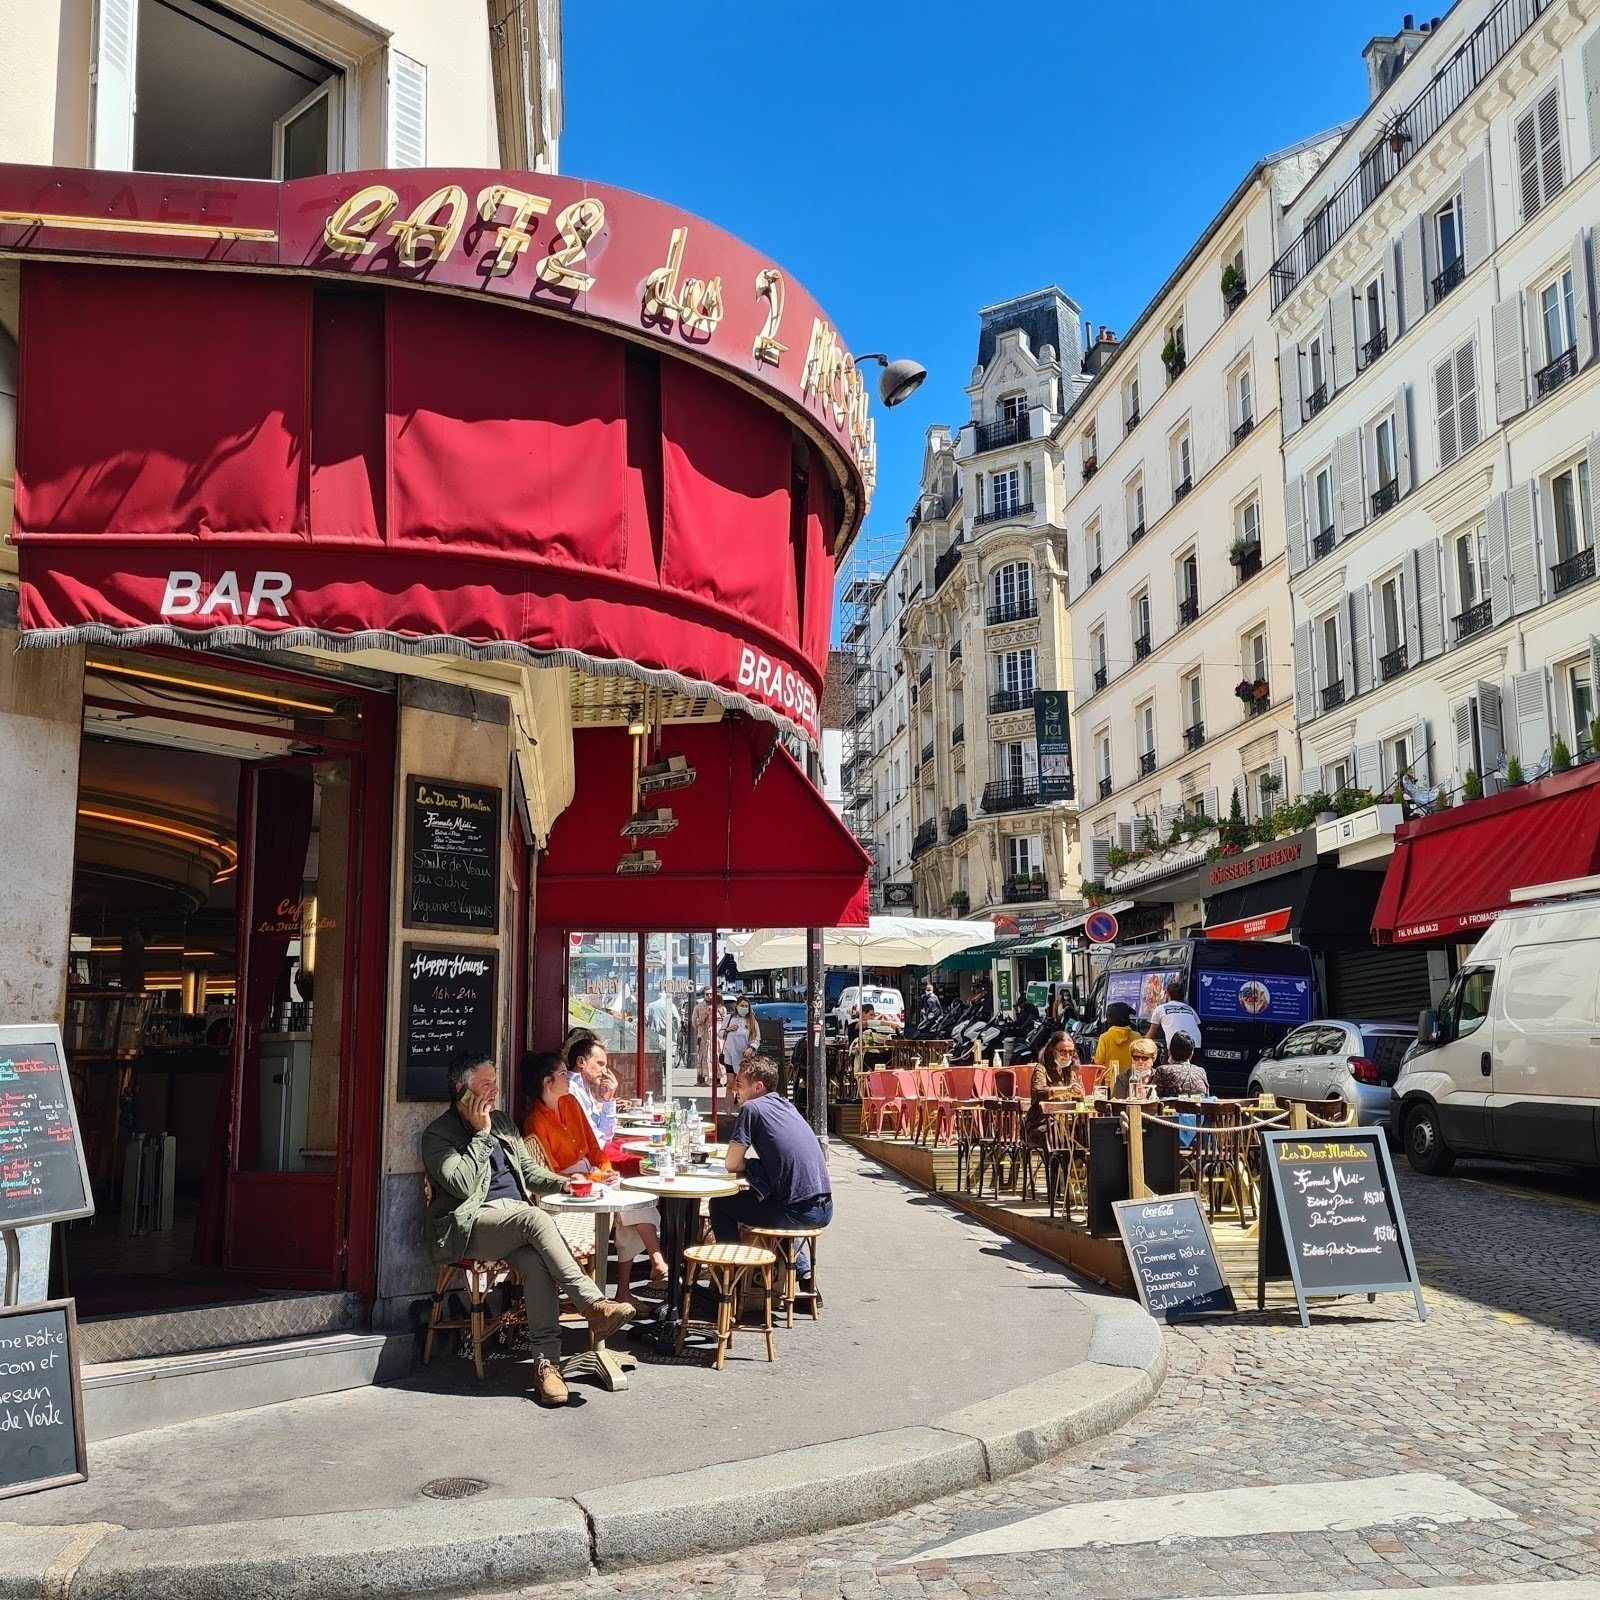 <span class="translation_missing" title="translation missing: en.meta.location_title, location_name: Café des Deux Moulins, city: Paris">Location Title</span>